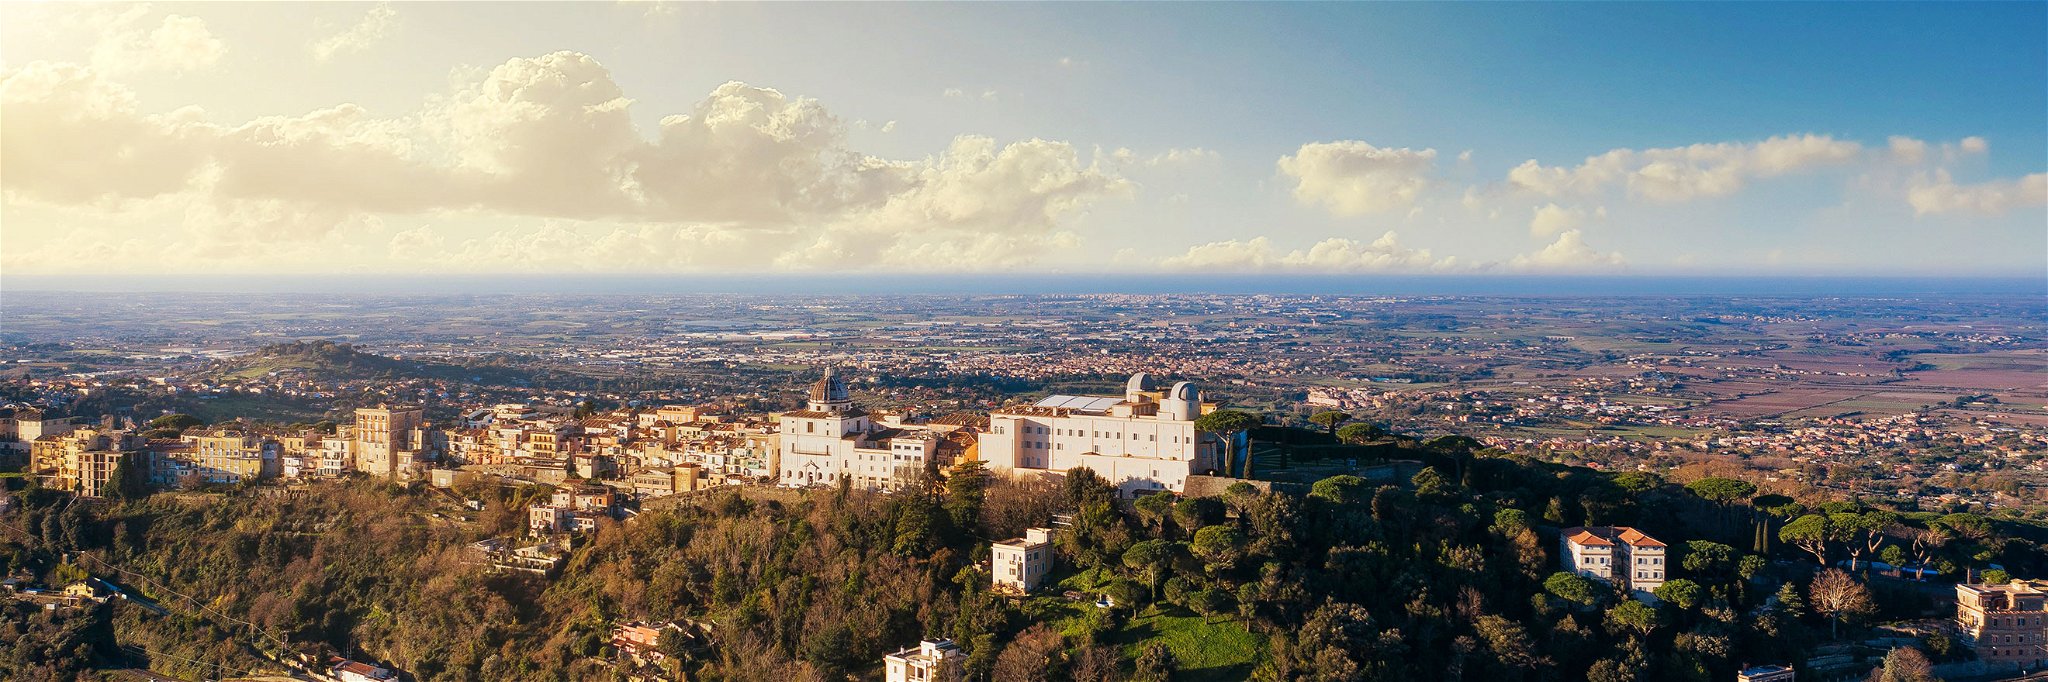 Castel Gandolfo liegt rund 25 Kilometer südlich von Rom.